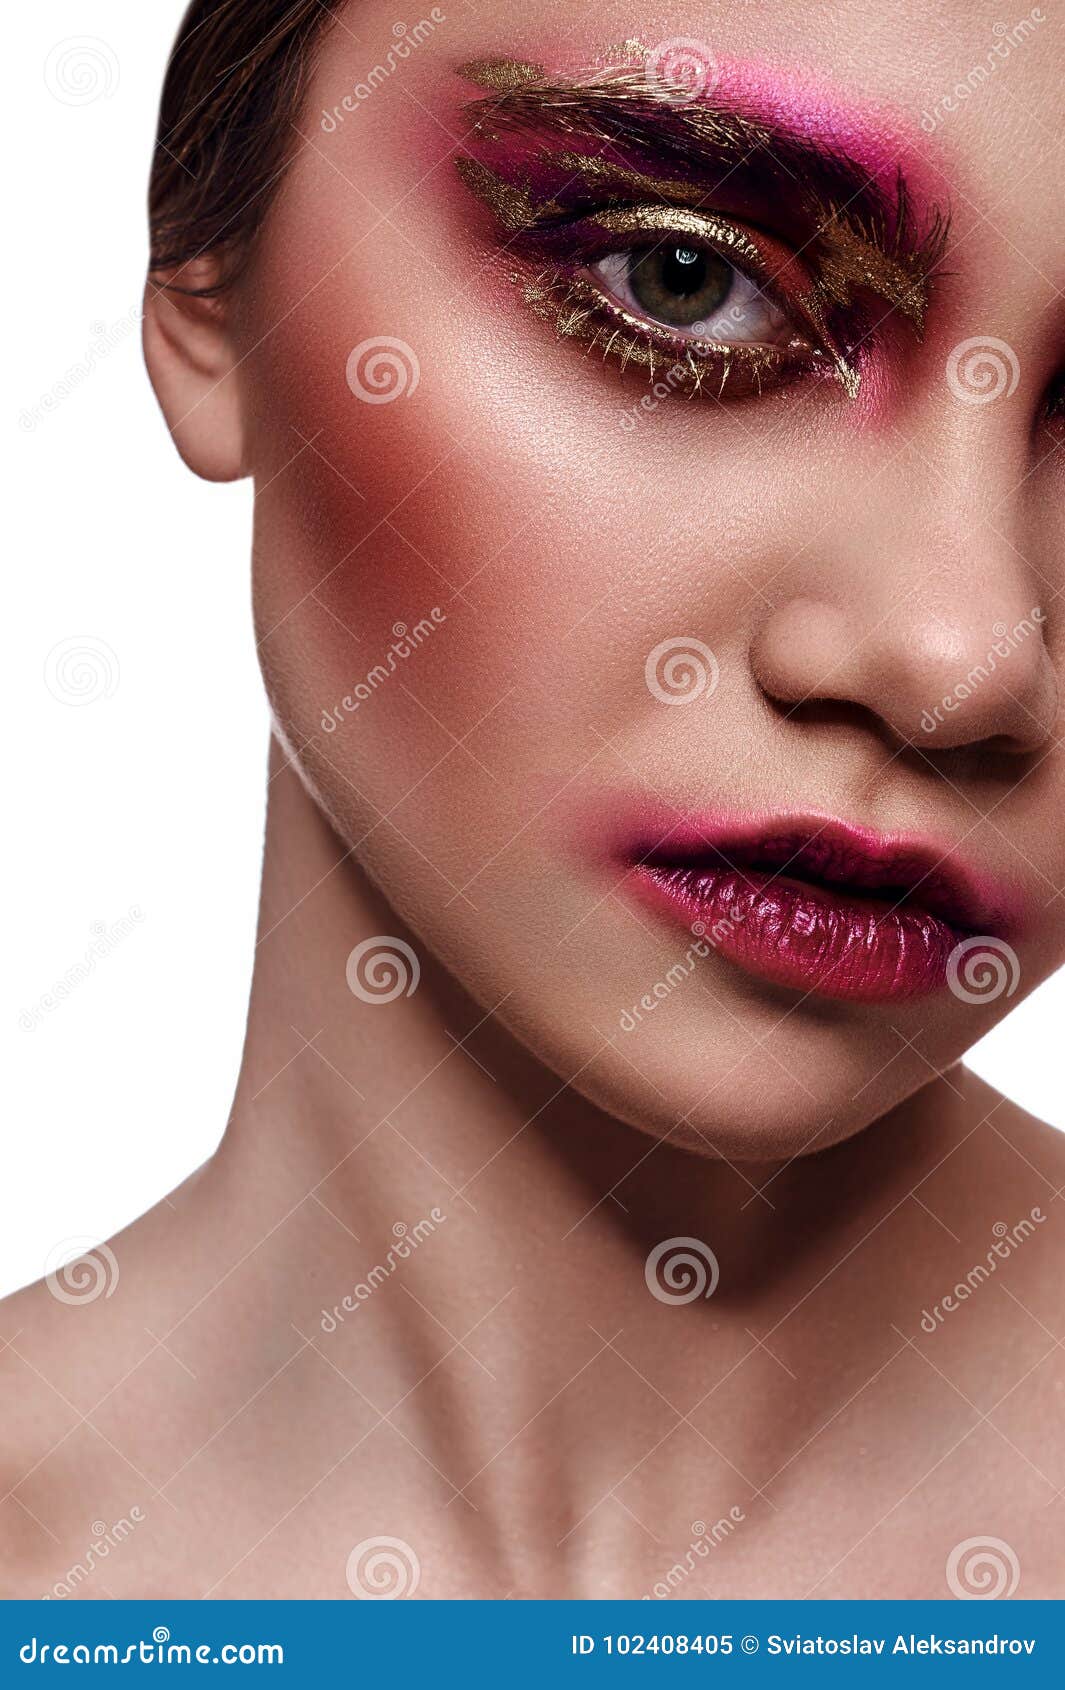 Jonge Met Roze Make-up Op Gezicht Stock - Image of begrip, 102408405